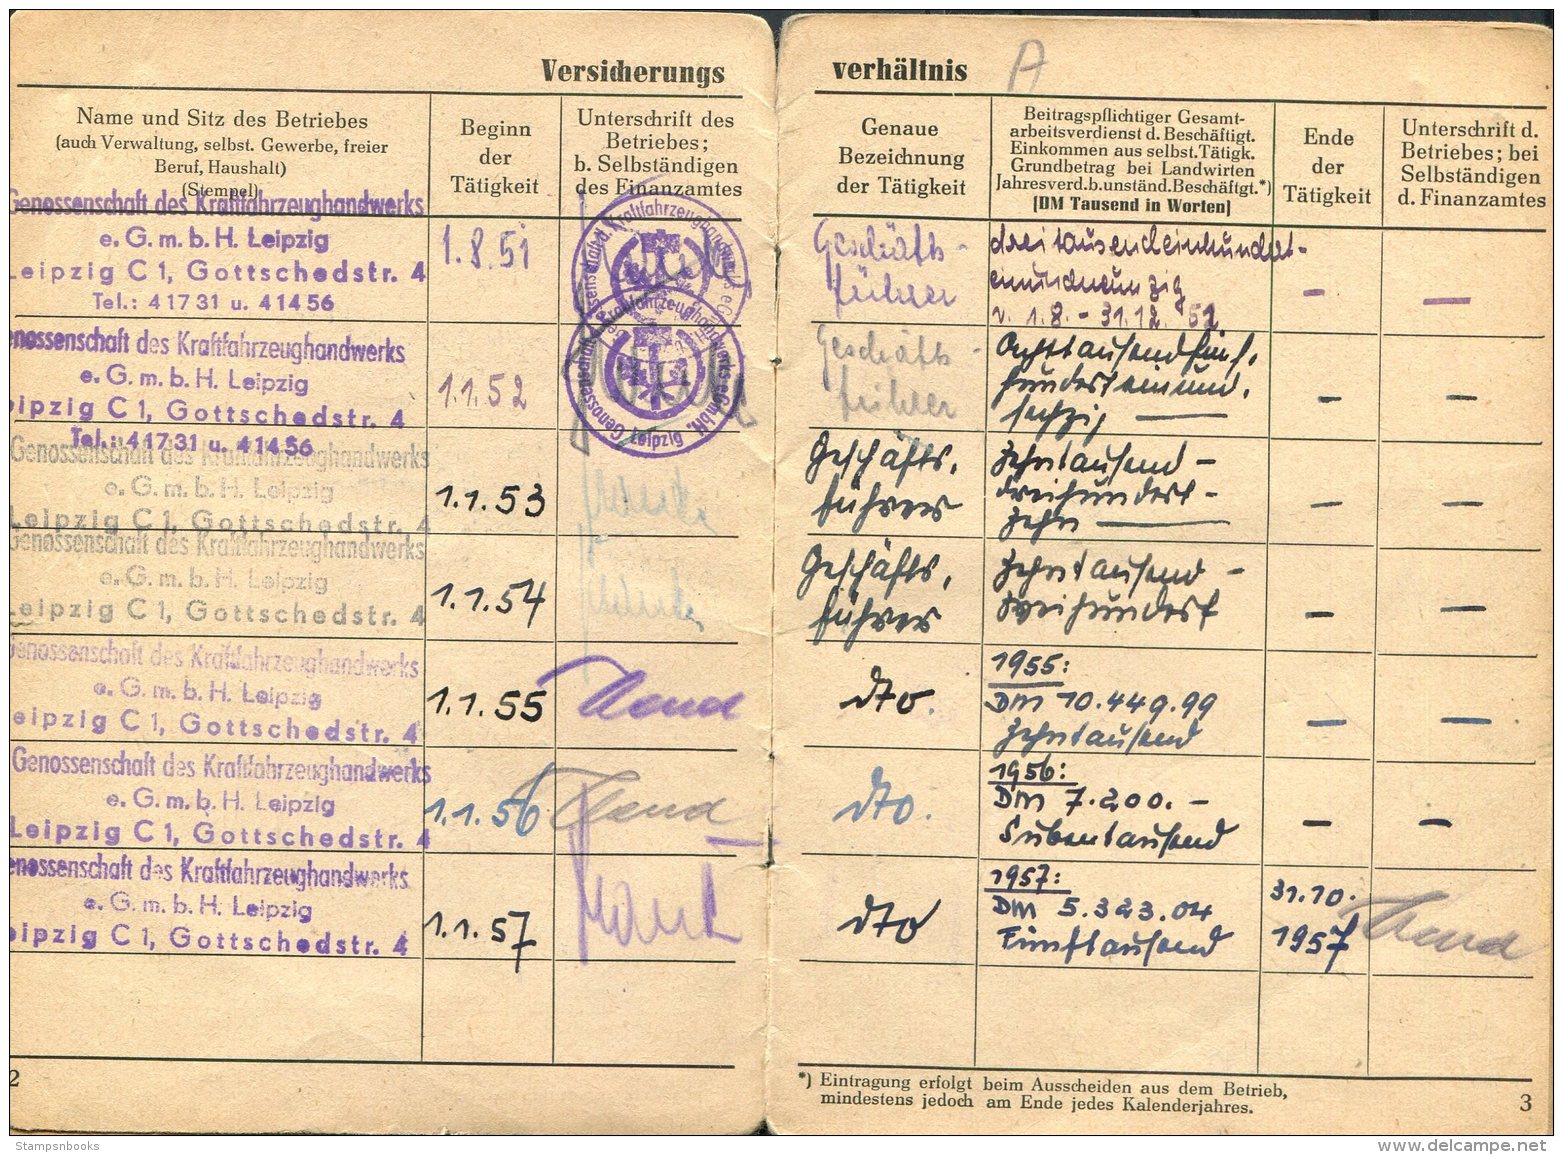 1952 Germany DDR Leipzig Socialversicherung Versicherungs-Ausweis - Historical Documents